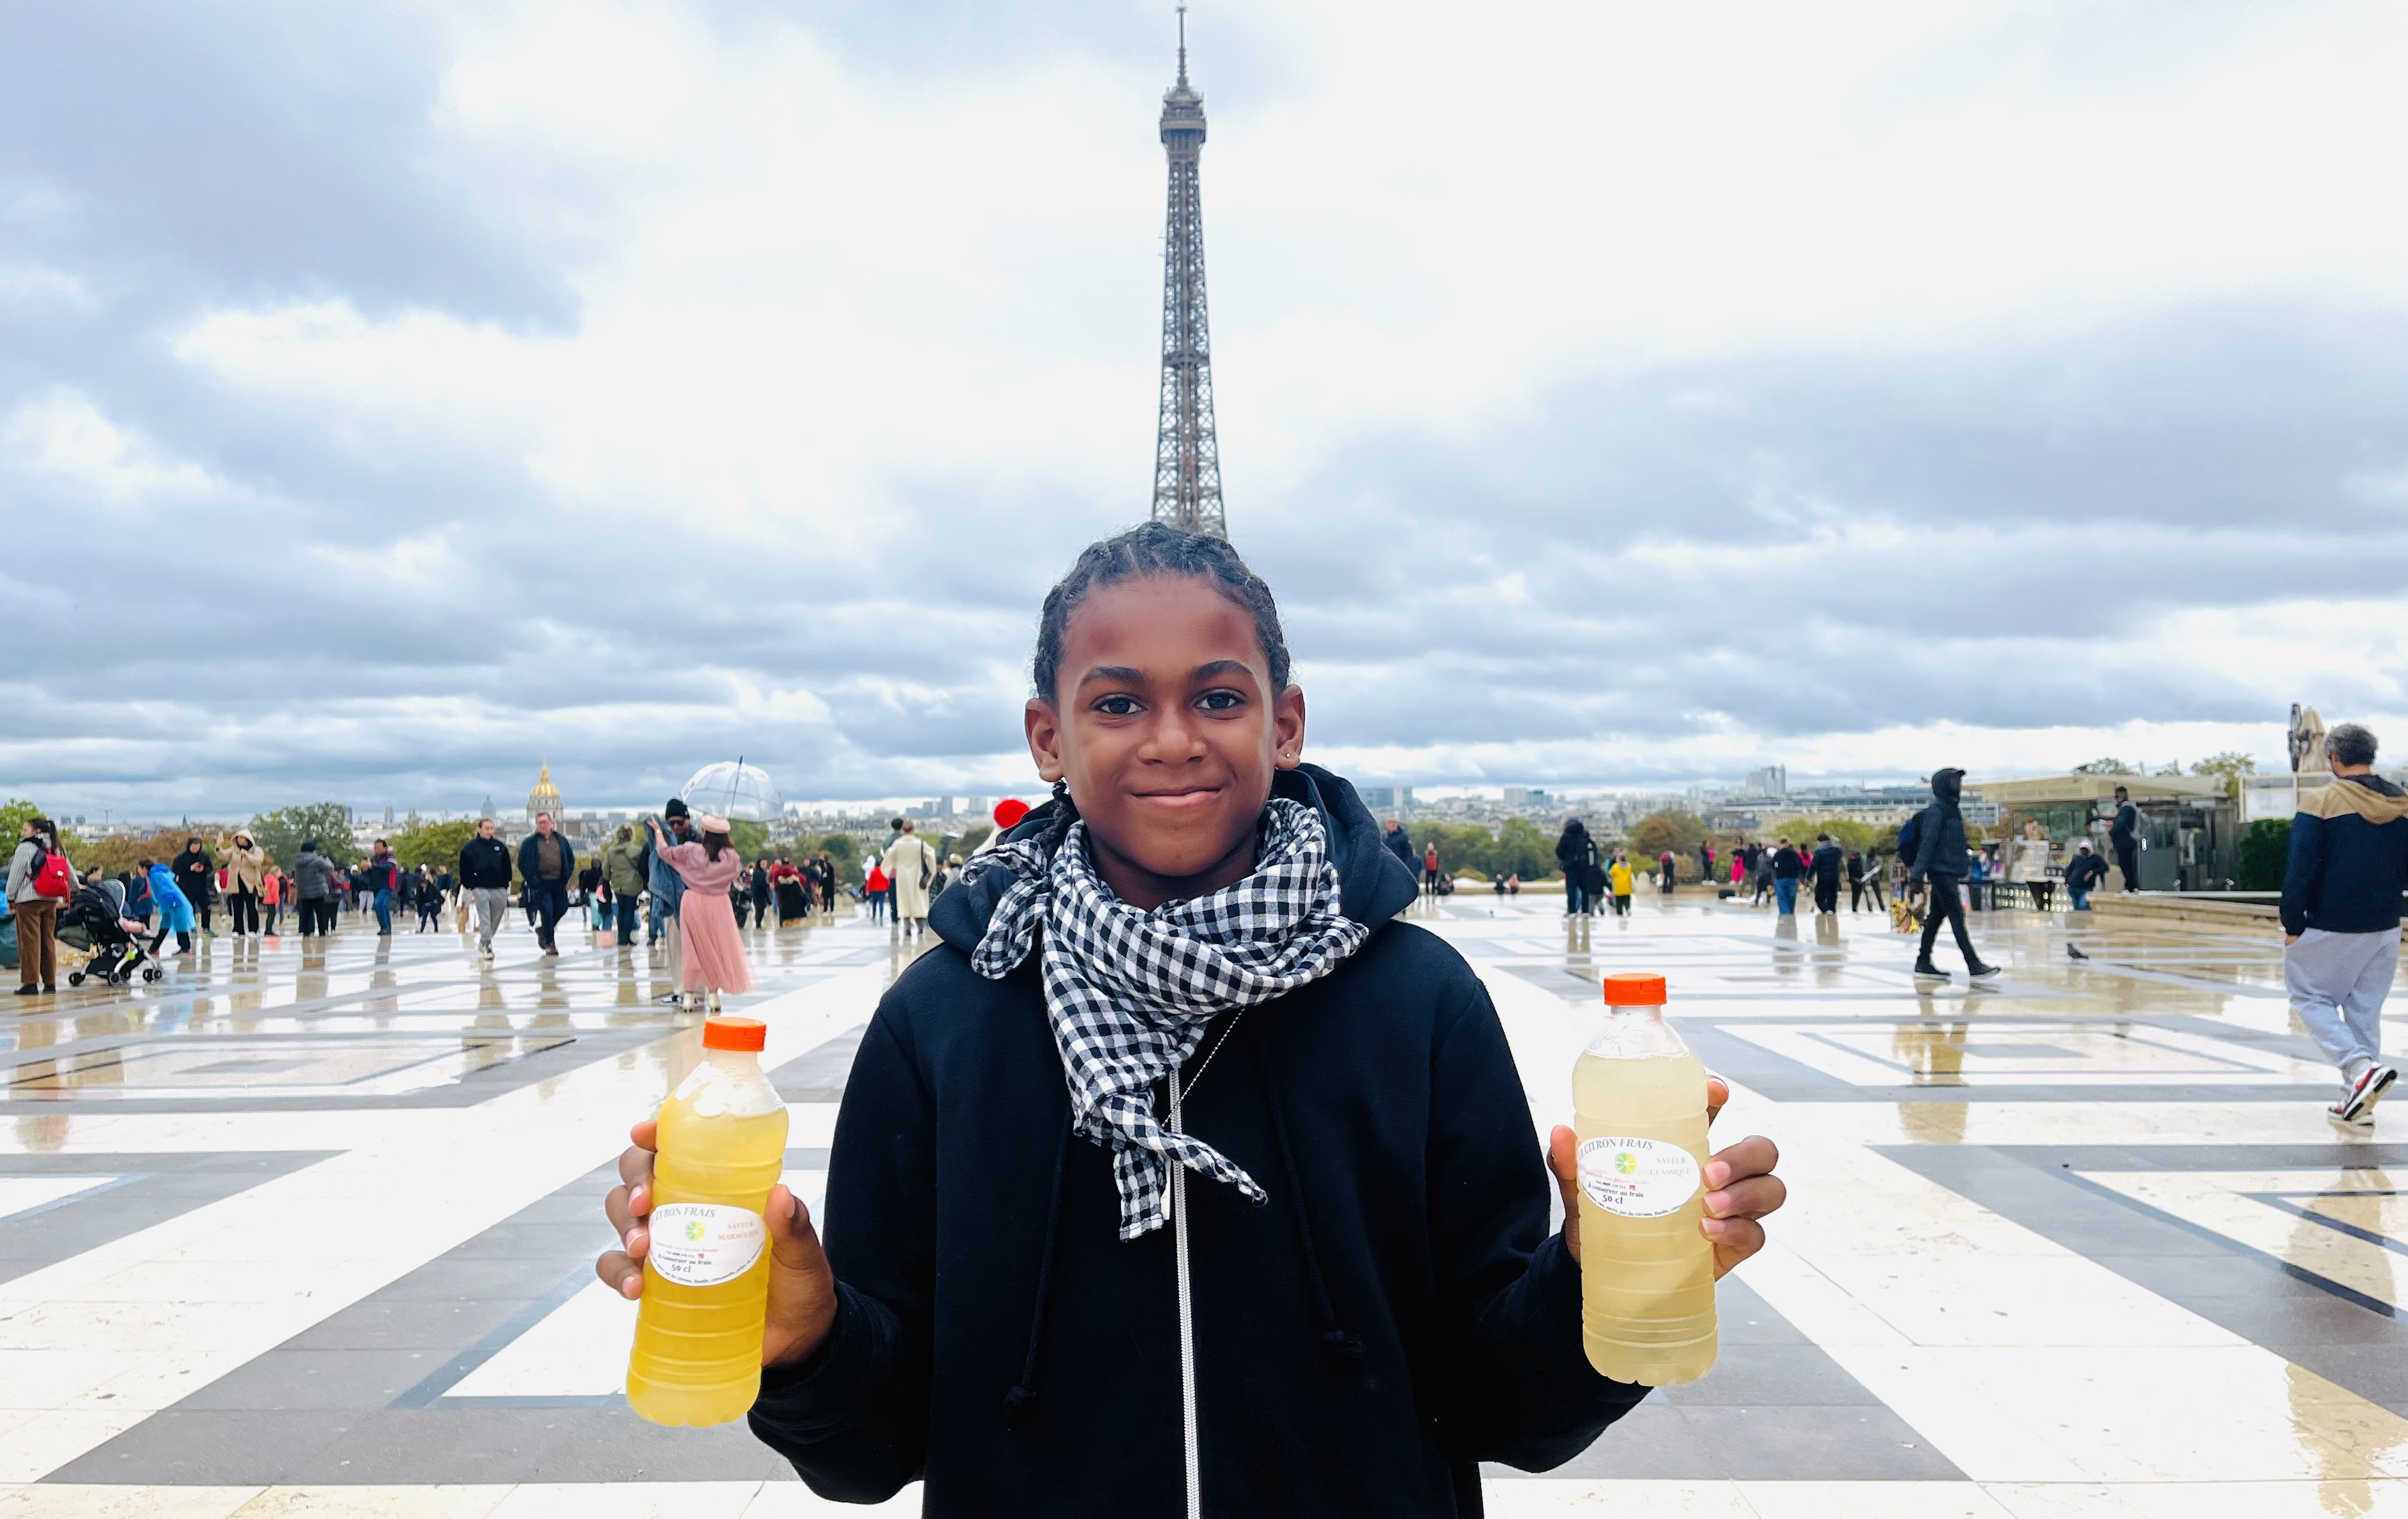     Alan Jean, le « kidpreneur » martiniquais, présente ses citronnades à Paris

